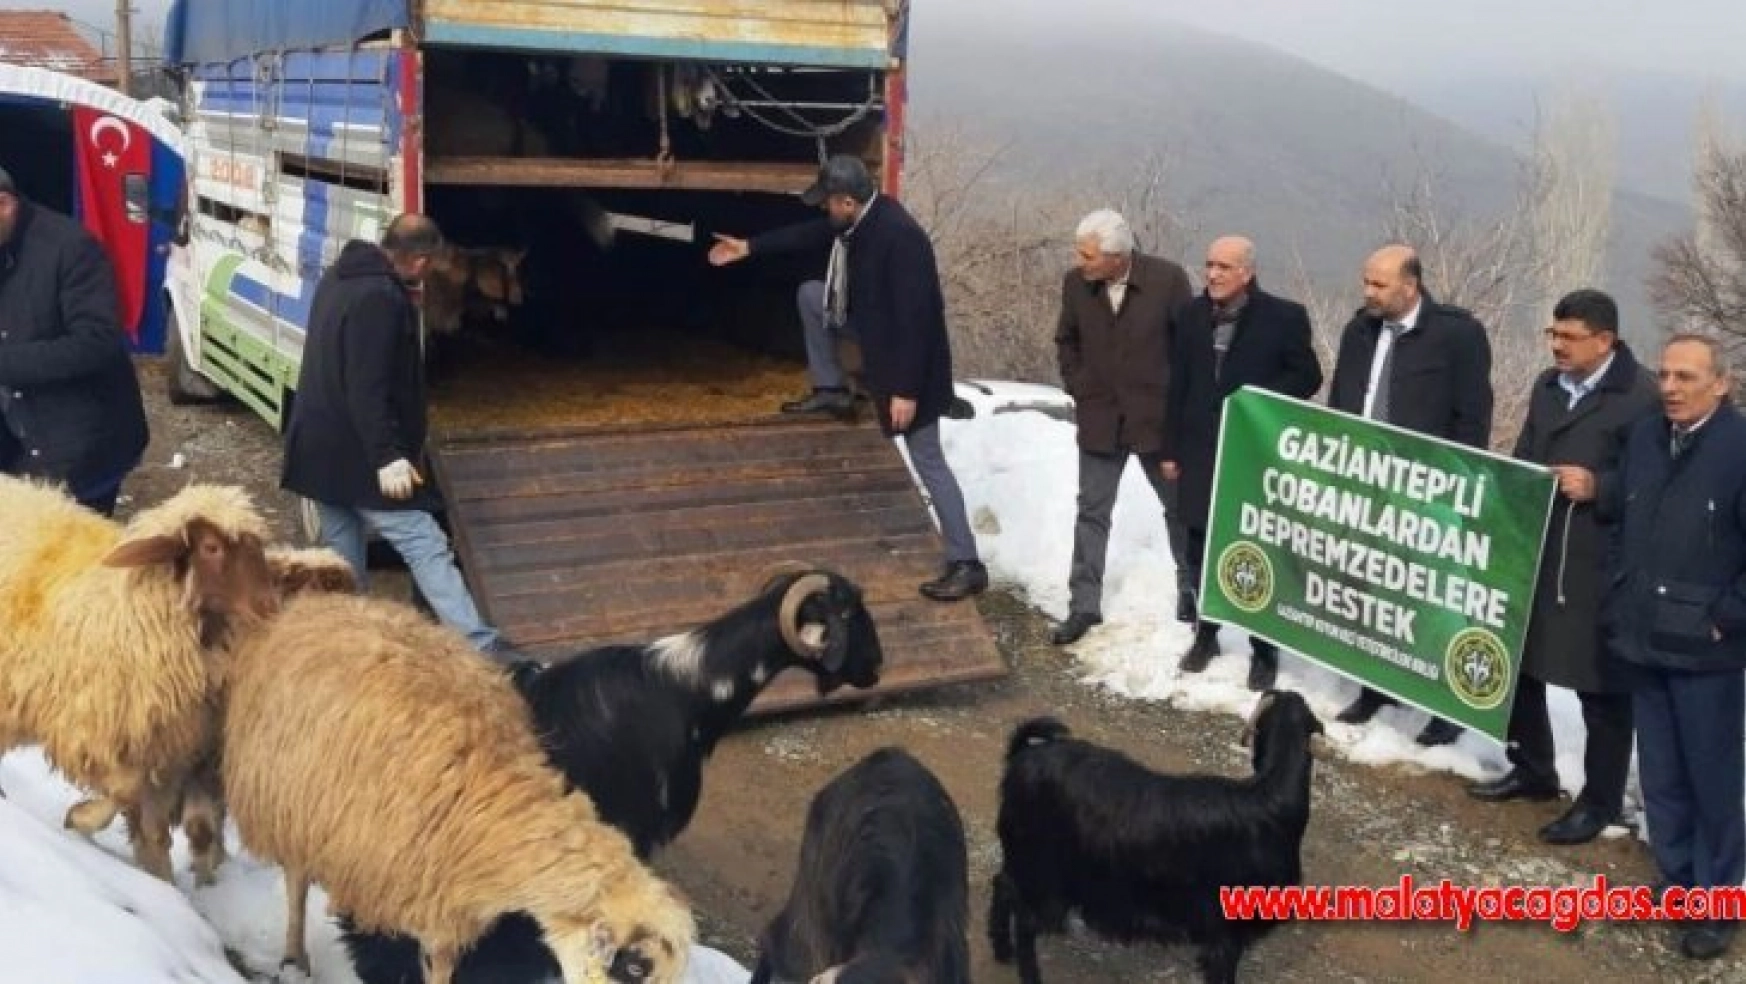 Gaziantepli çobanlardan depremzedelere anlamlı destek